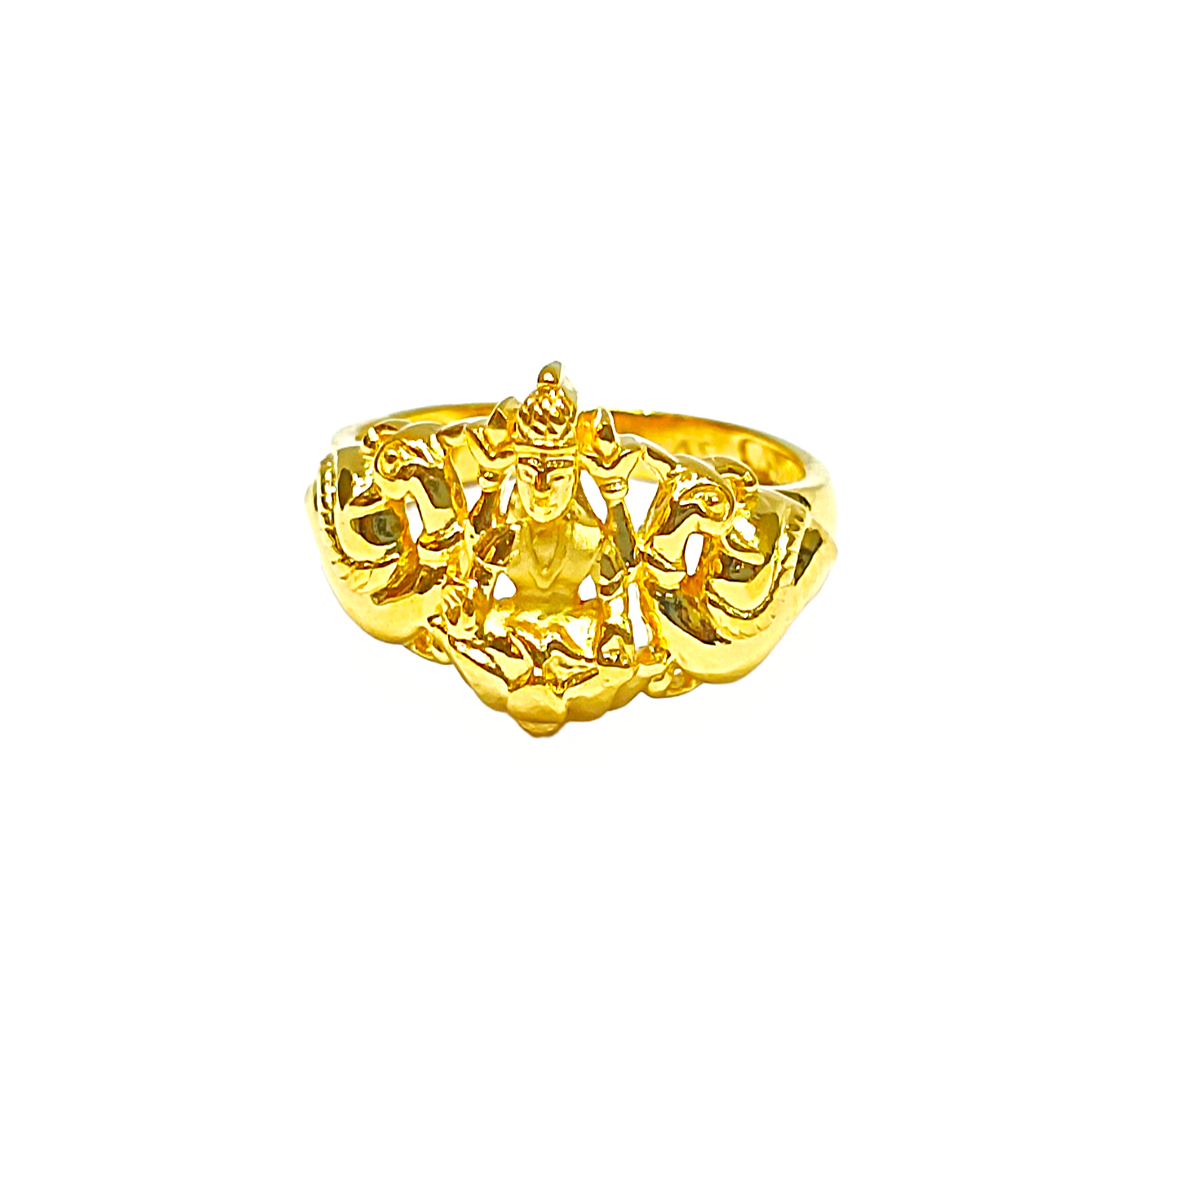 Nayaneshwari gold ring